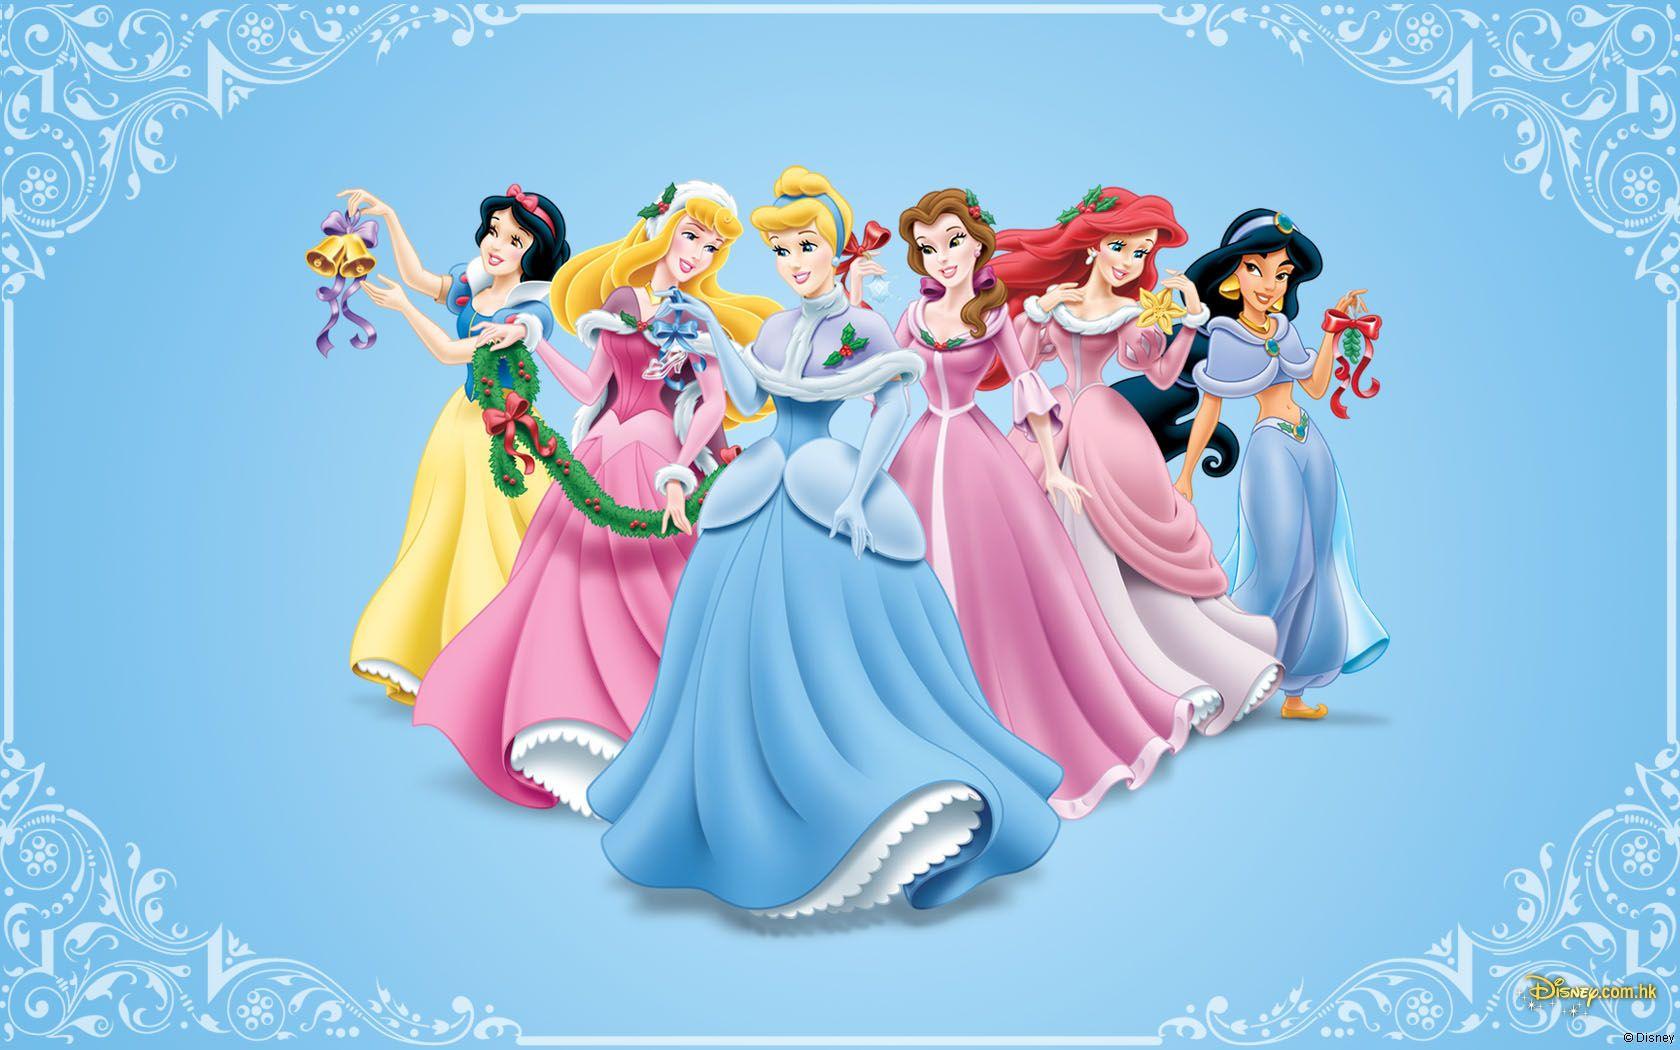 Disney Princess Christmas. Disney princess cartoons, Disney